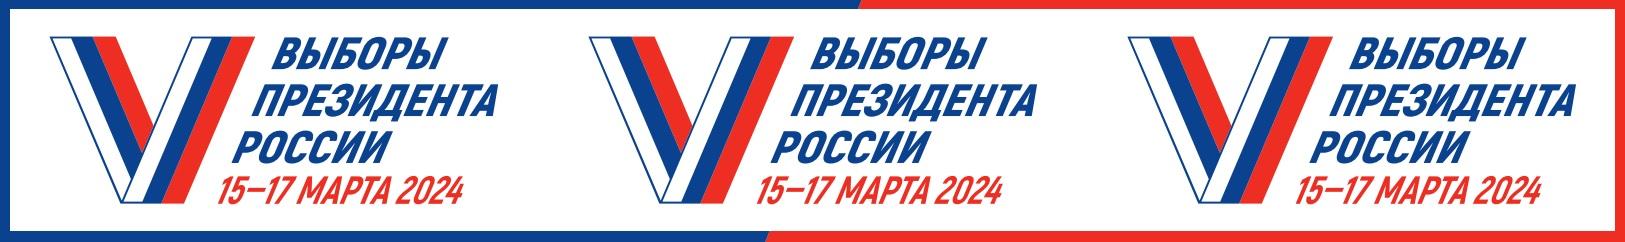 Выборы Президента России пройдут 15-17 марта 2024 года 